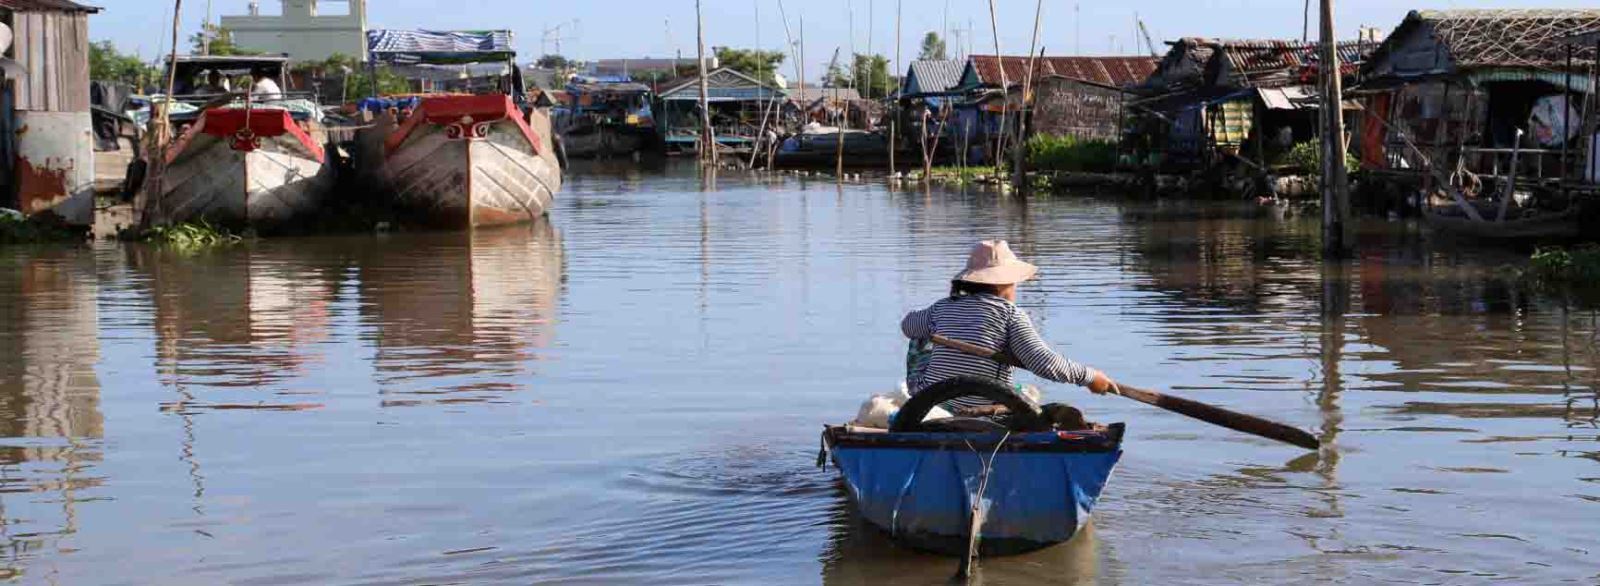 Les villages flottants dans le fleuve de Hau Giang